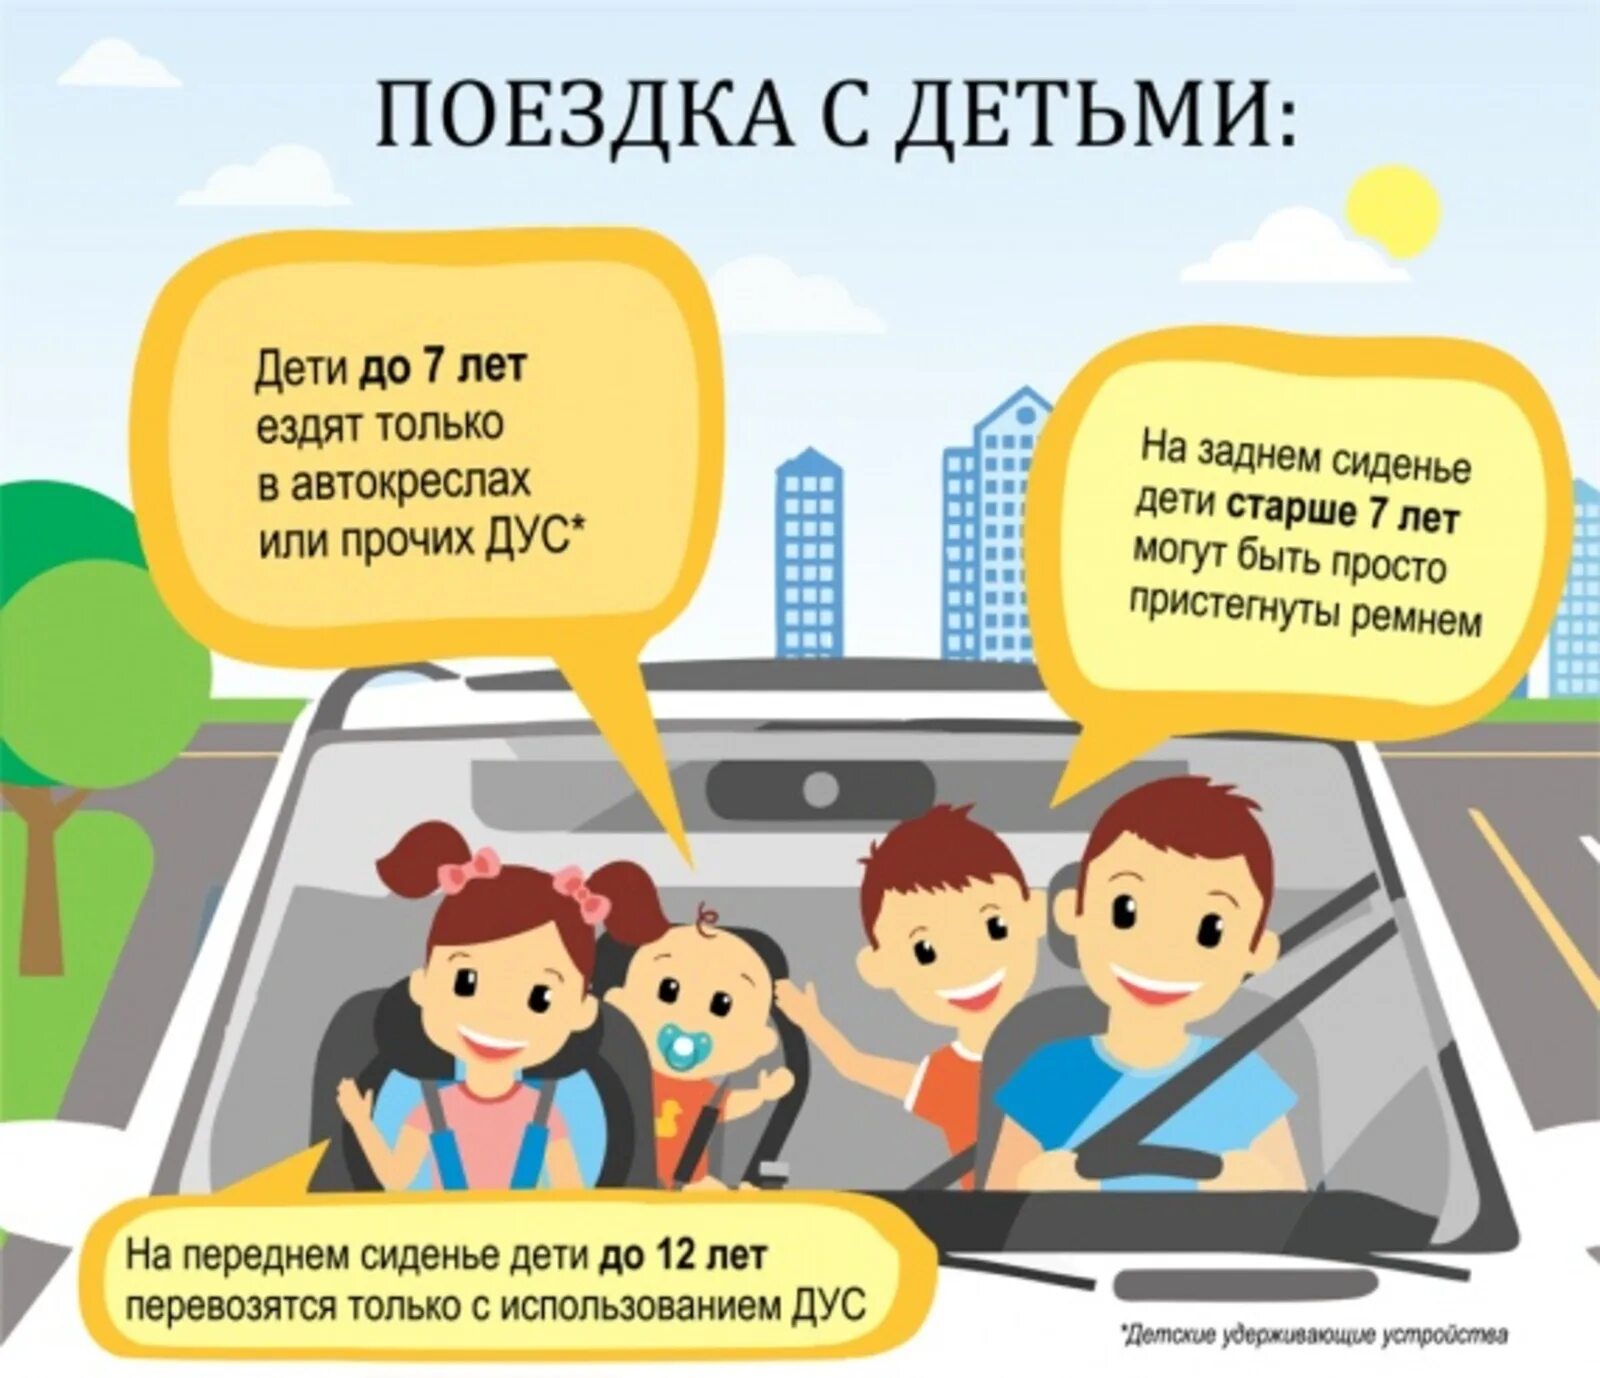 Имеет ли право пассажир ребенок. Безопасность детей в автомобиле. Правила безопасности в автомобиле для детей. Правила перевозки детей. Правила перевозки детей в автомобиле.